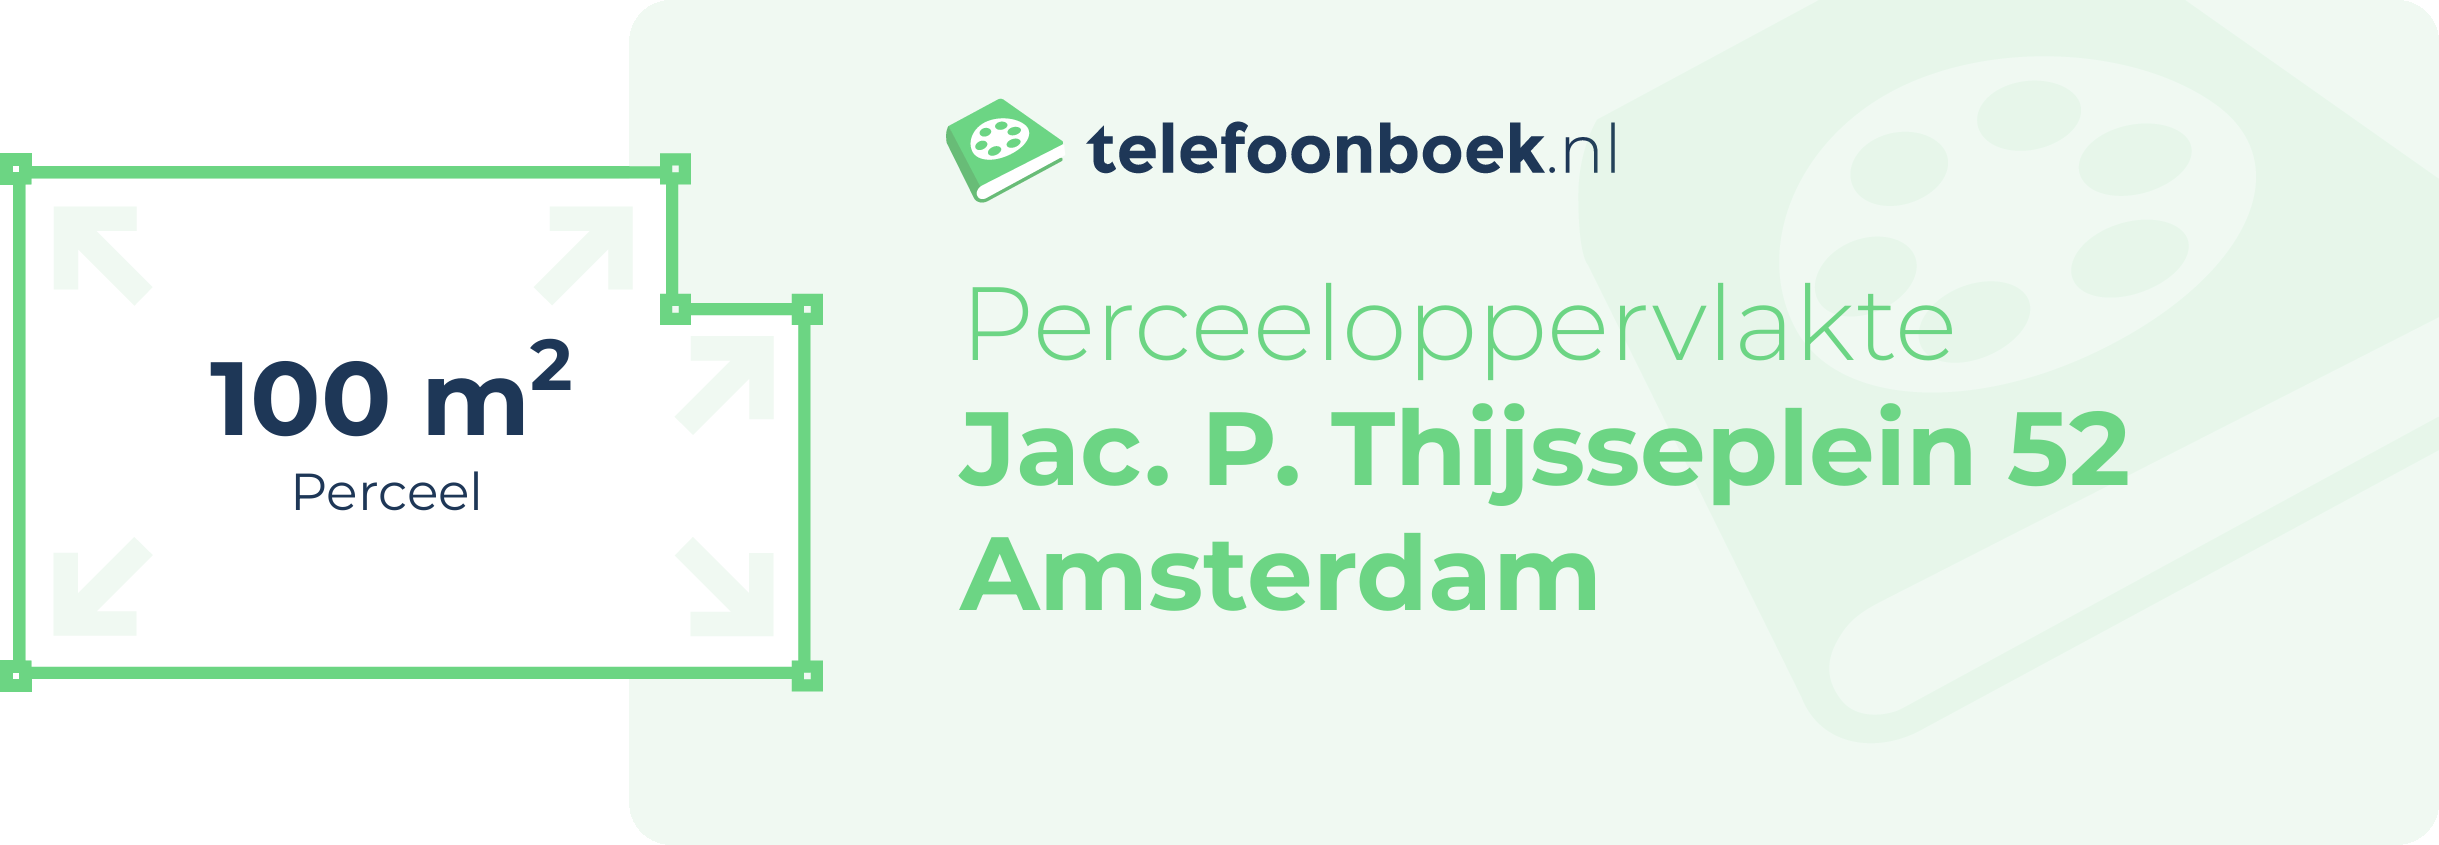 Perceeloppervlakte Jac. P. Thijsseplein 52 Amsterdam